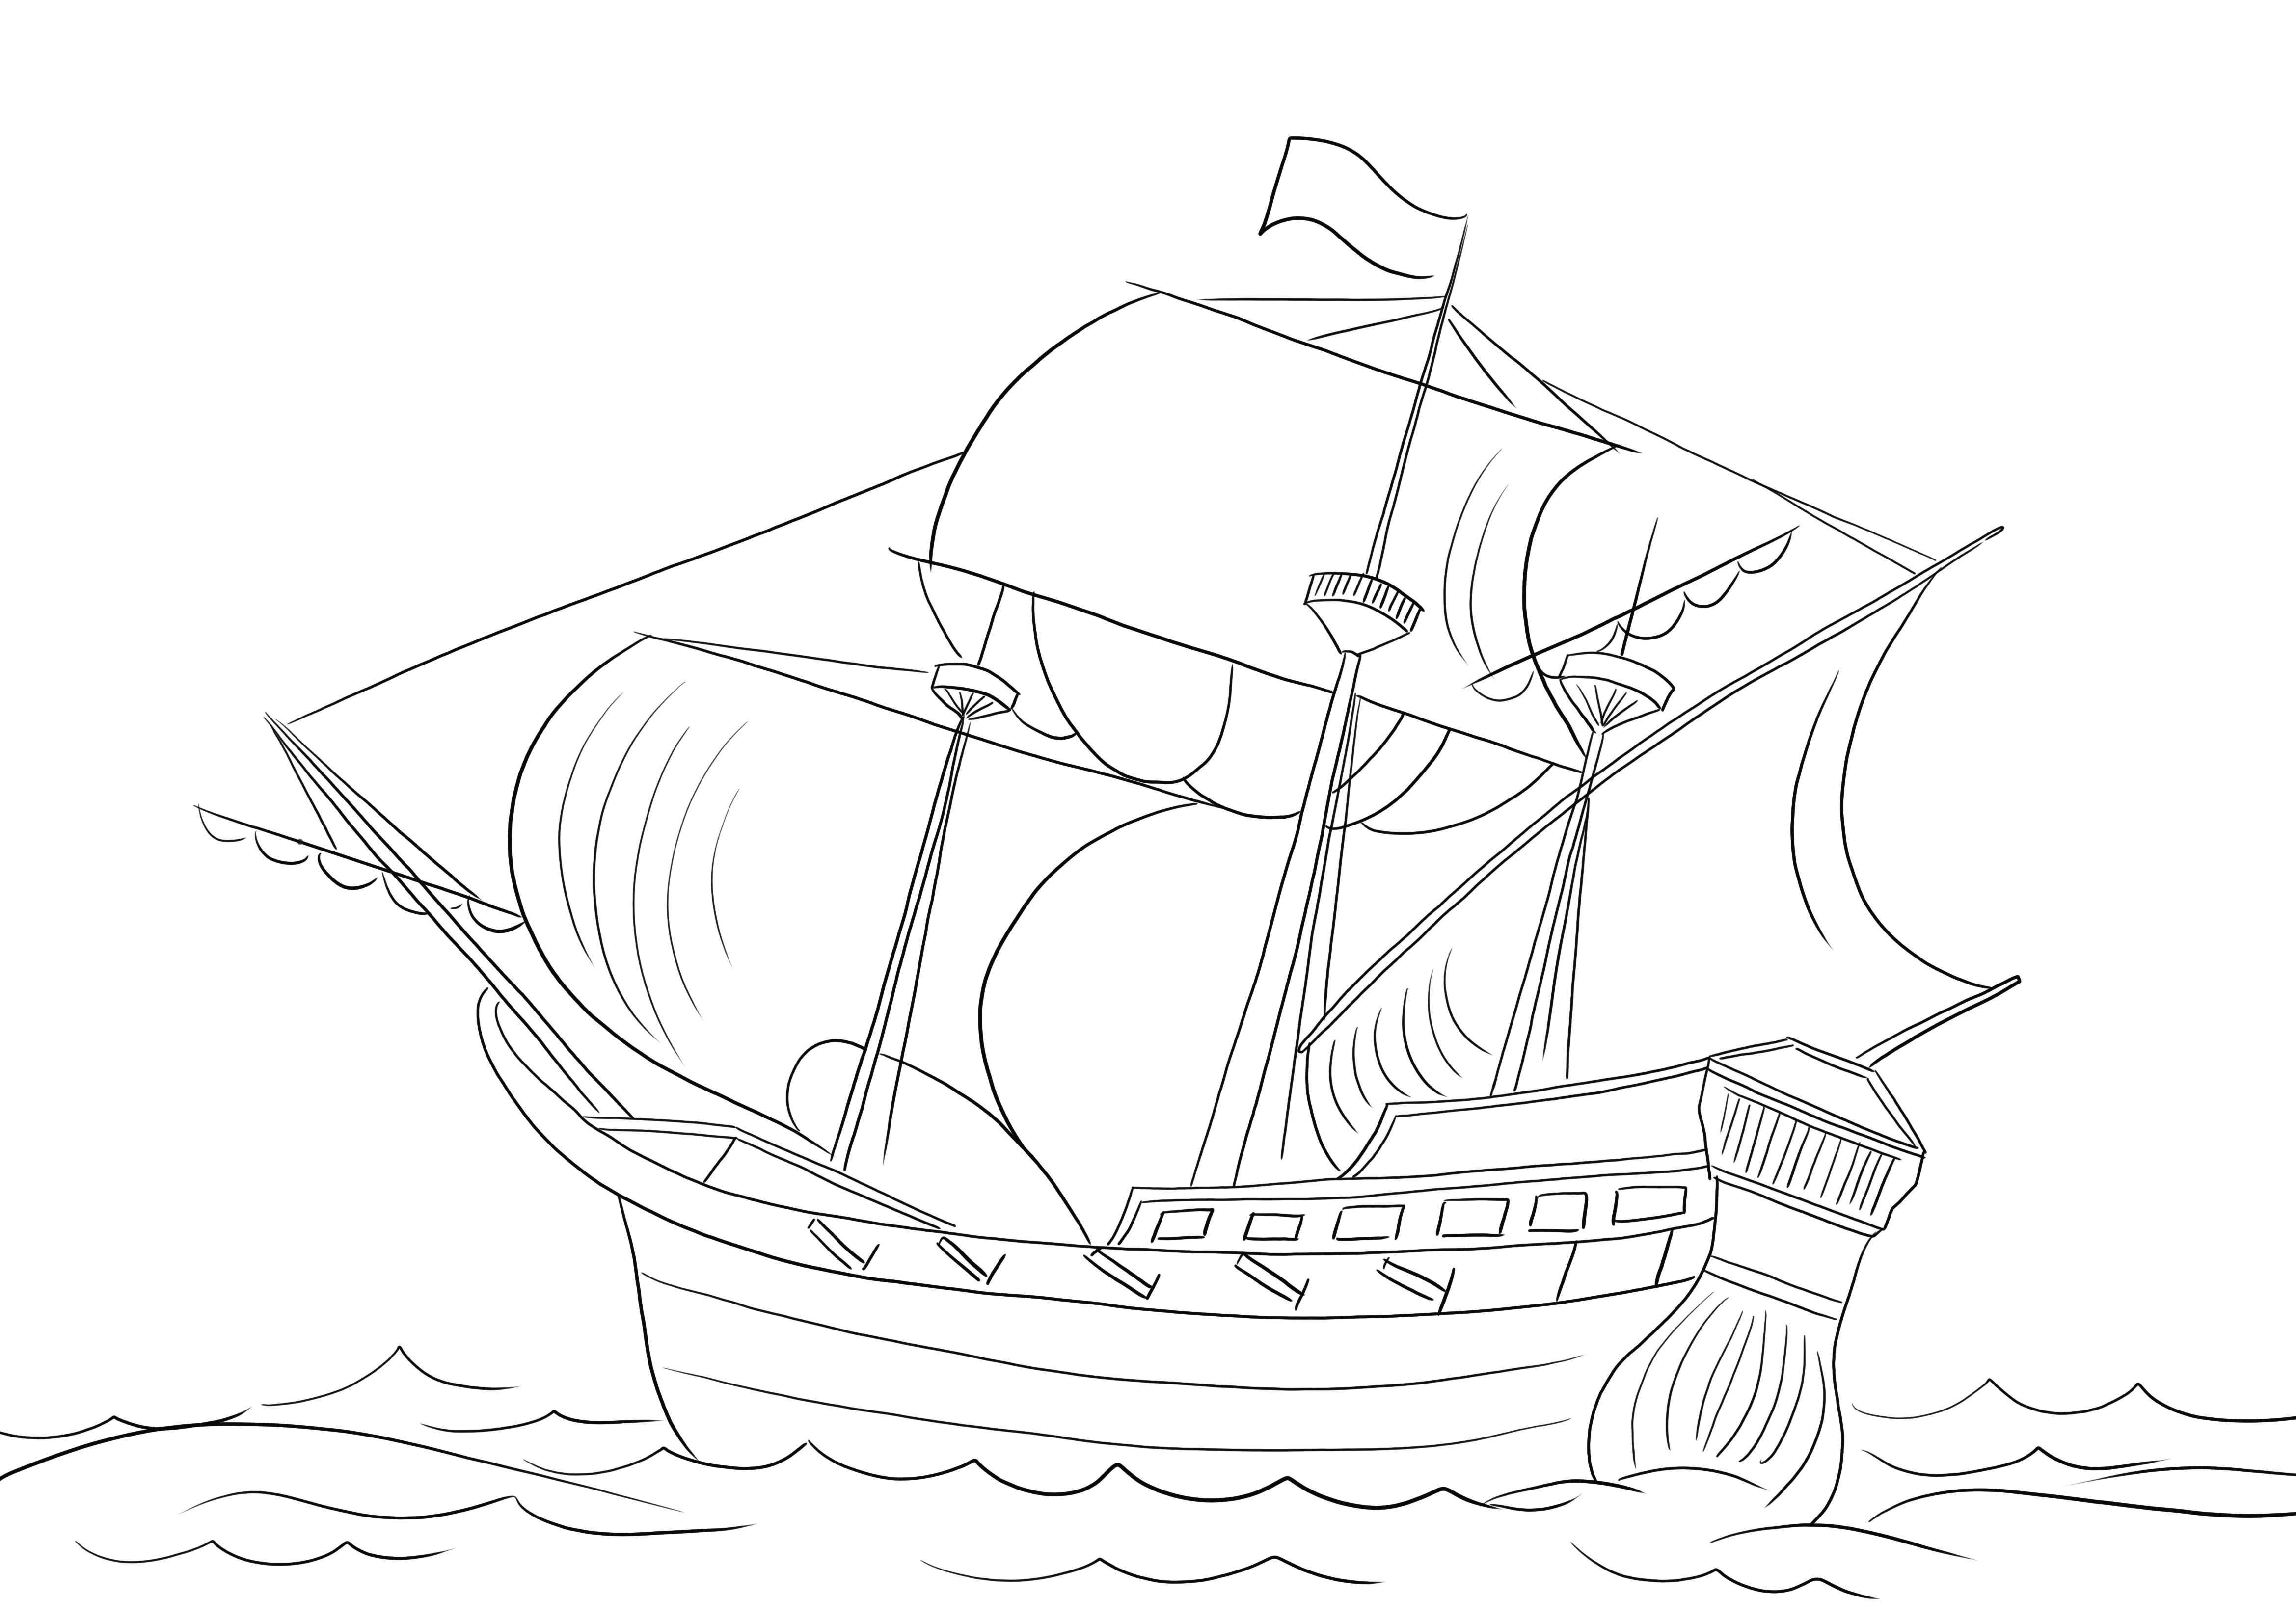 Imprimible gratis de un Barco Pirata para colorear y aprender tipos de barcos